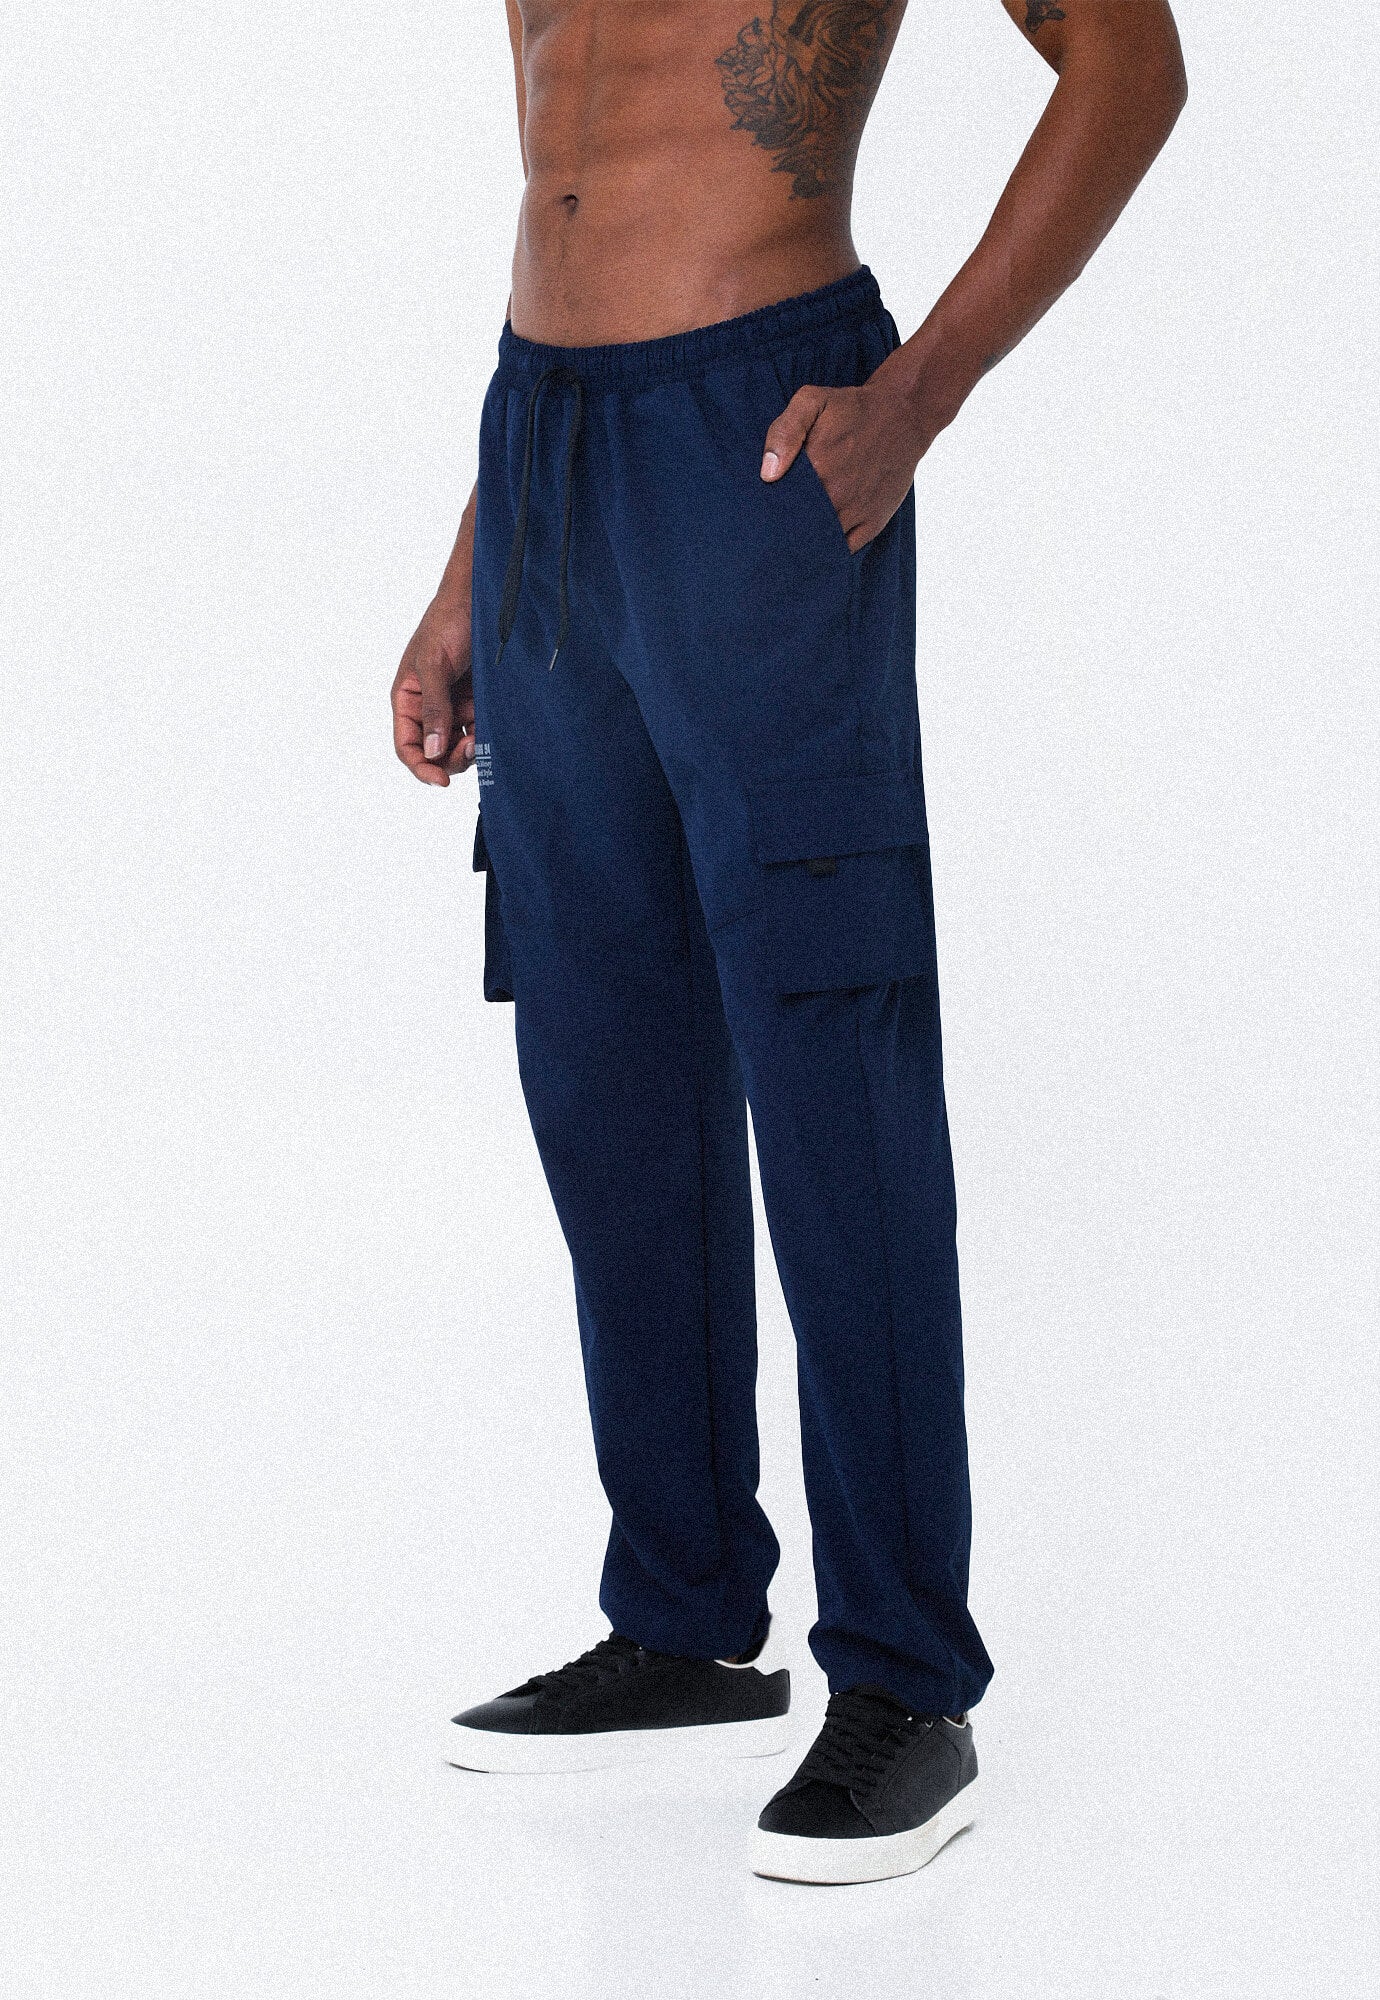 Pantalón azul oscuro con bolsillos frontales diagonales para hombre